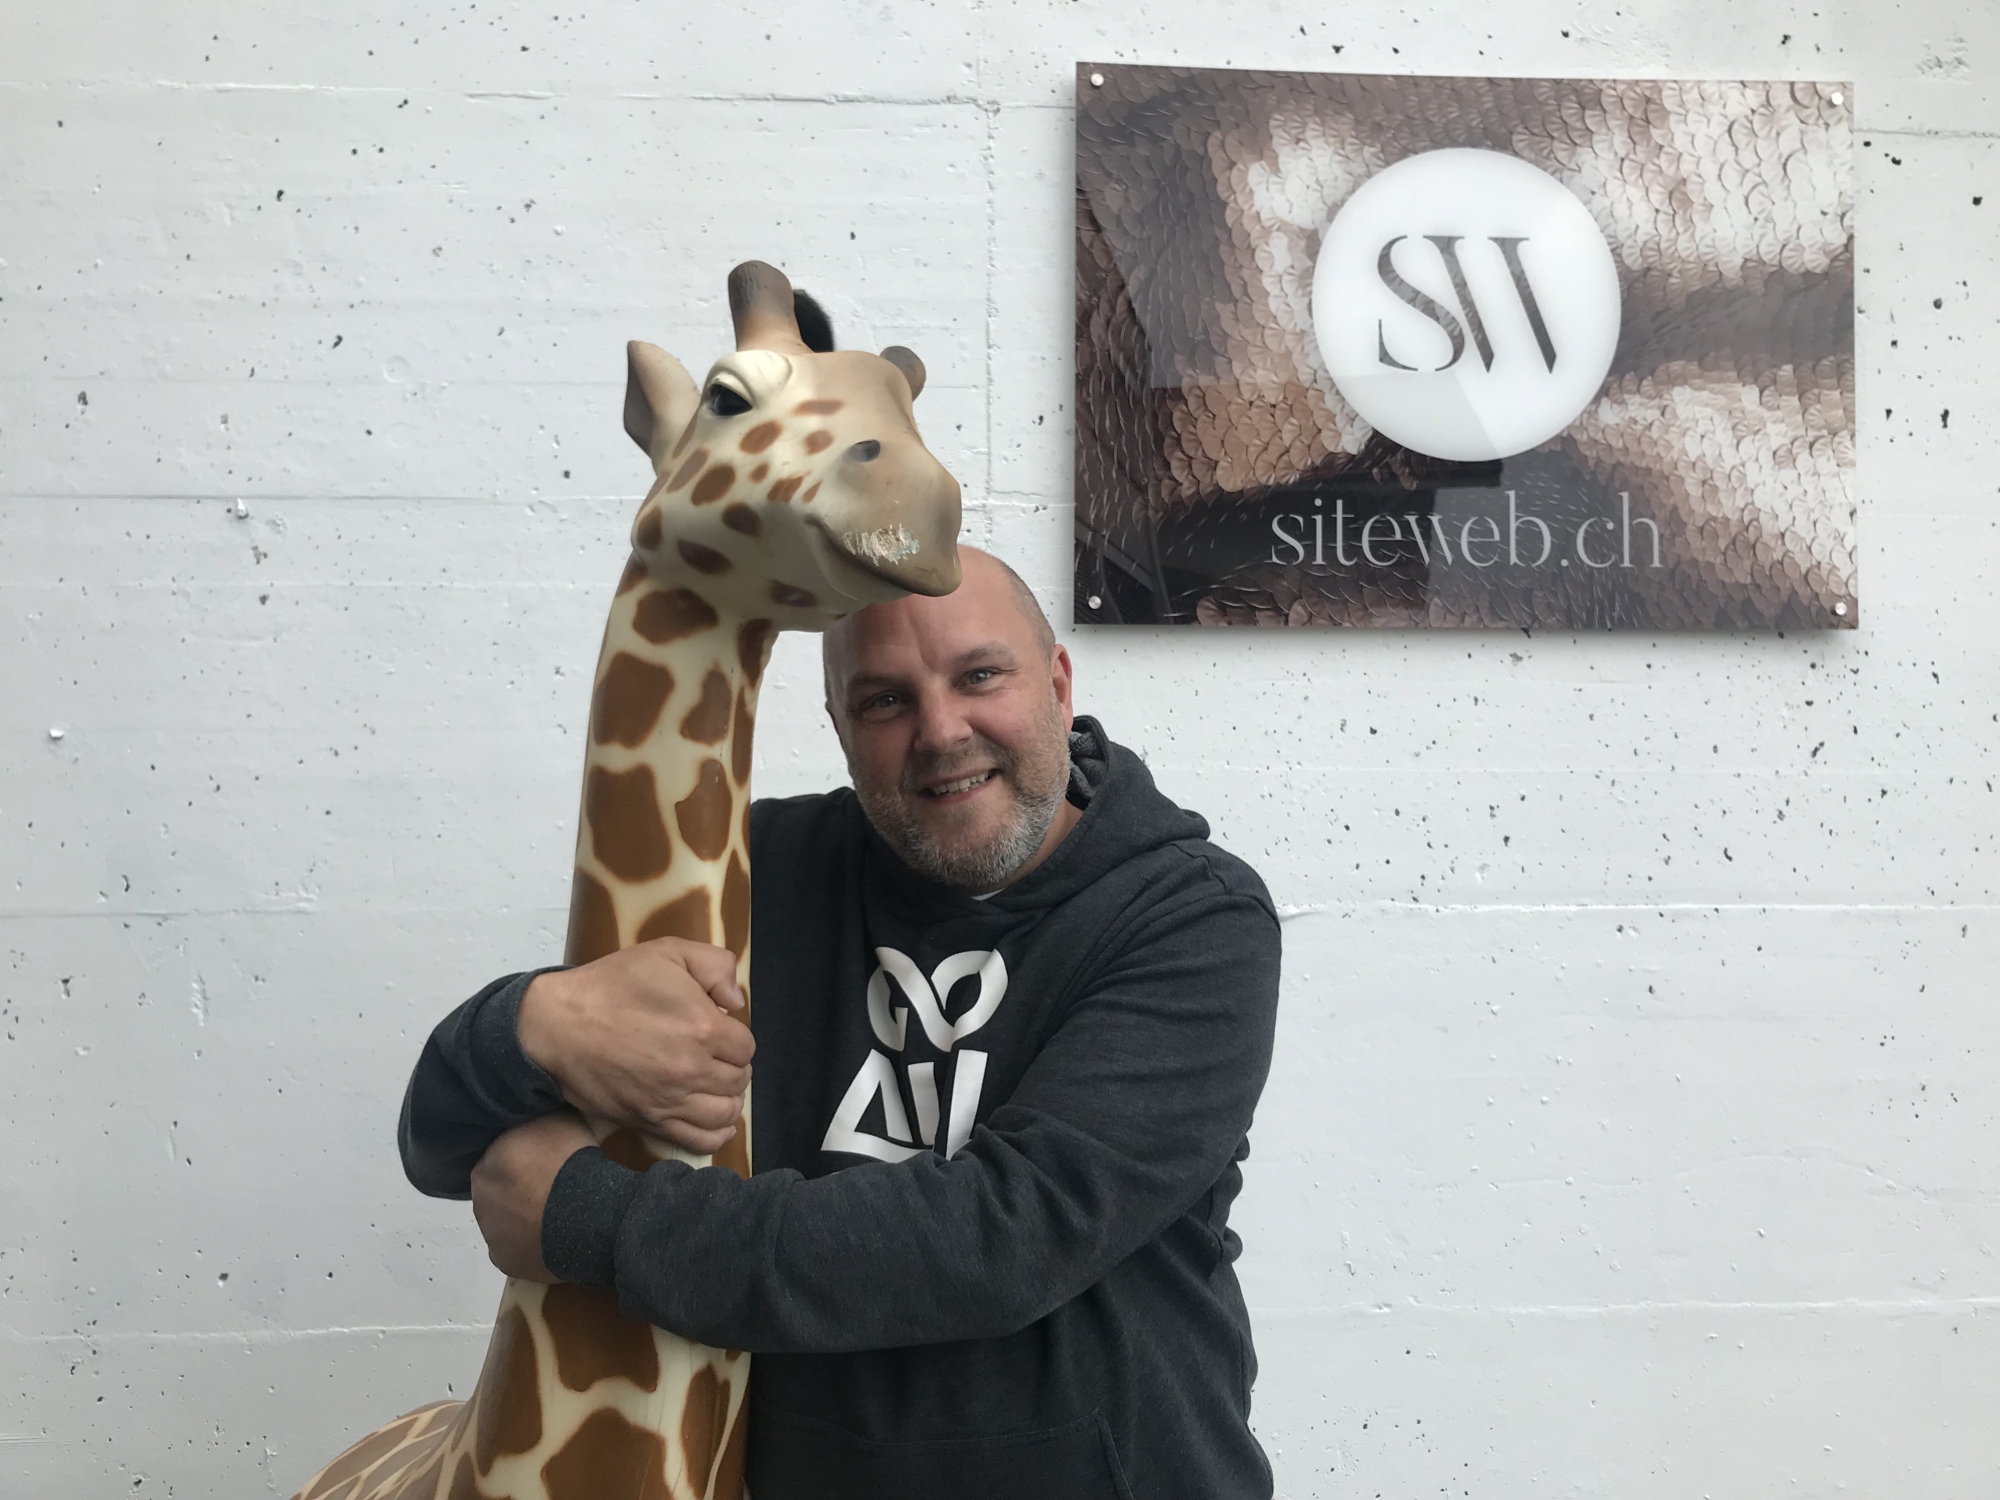 Le patron de siteweb.ch a retrouvé sa girafe.